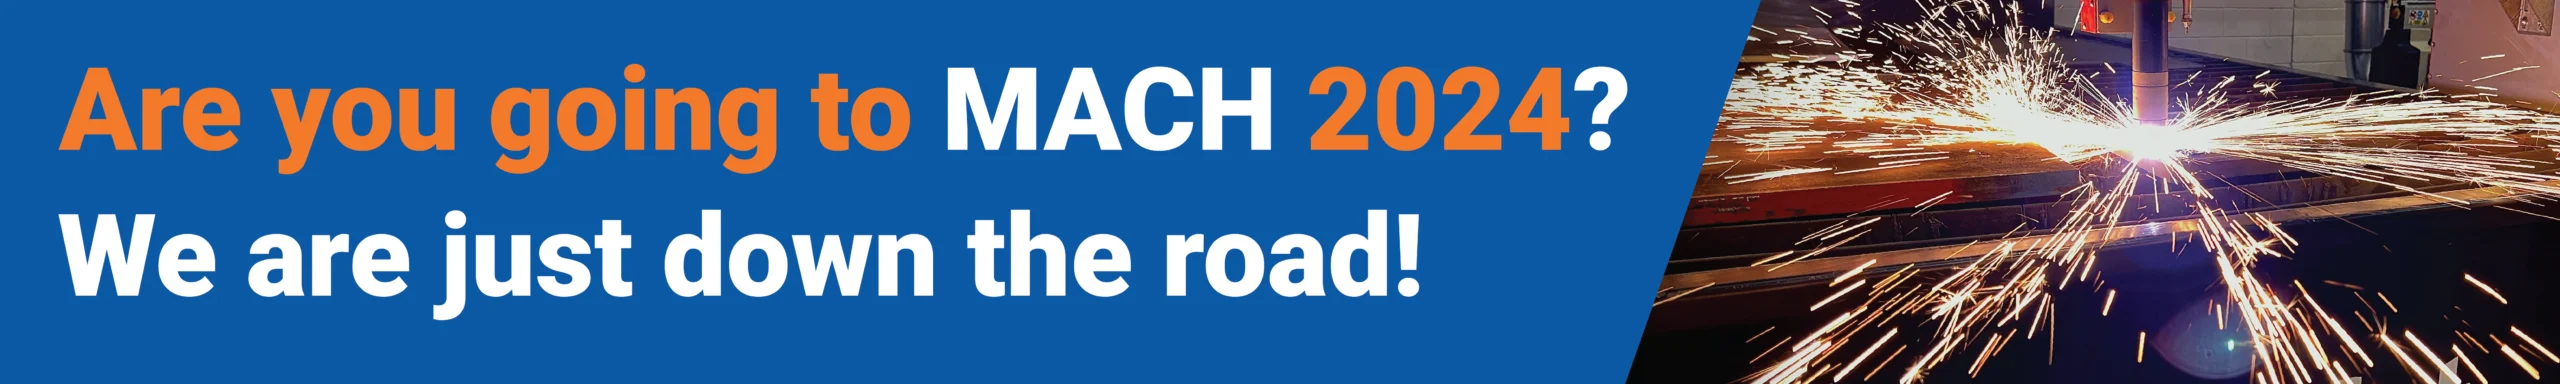 क्या आप MACH 2024 बैनर पर जा रहे हैं